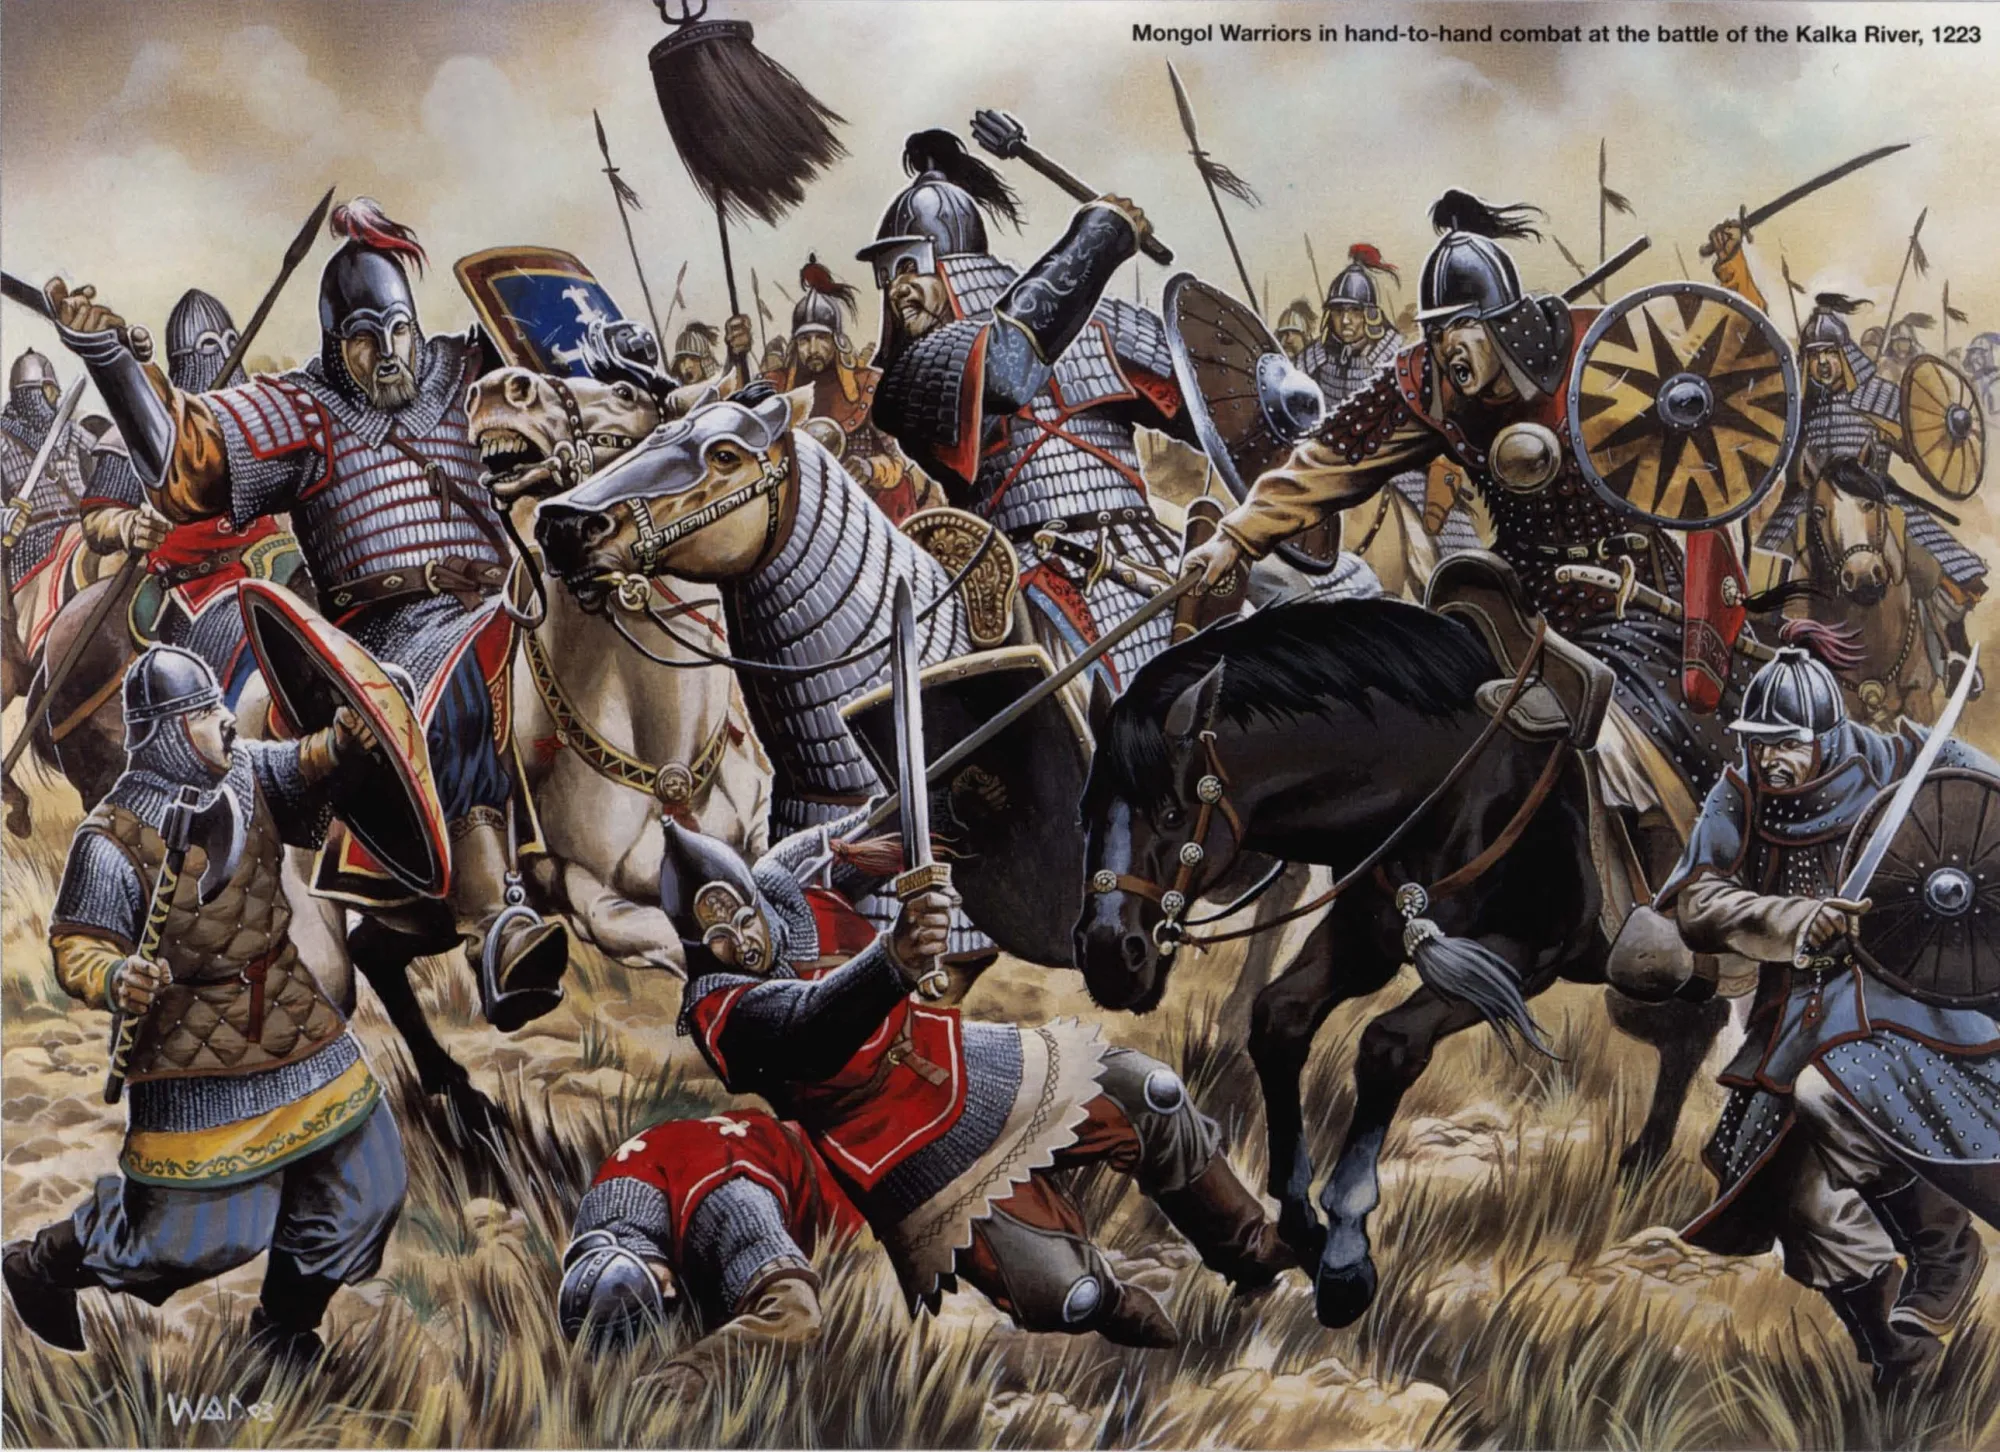 卡尔卡河之战中的蒙古重骑兵